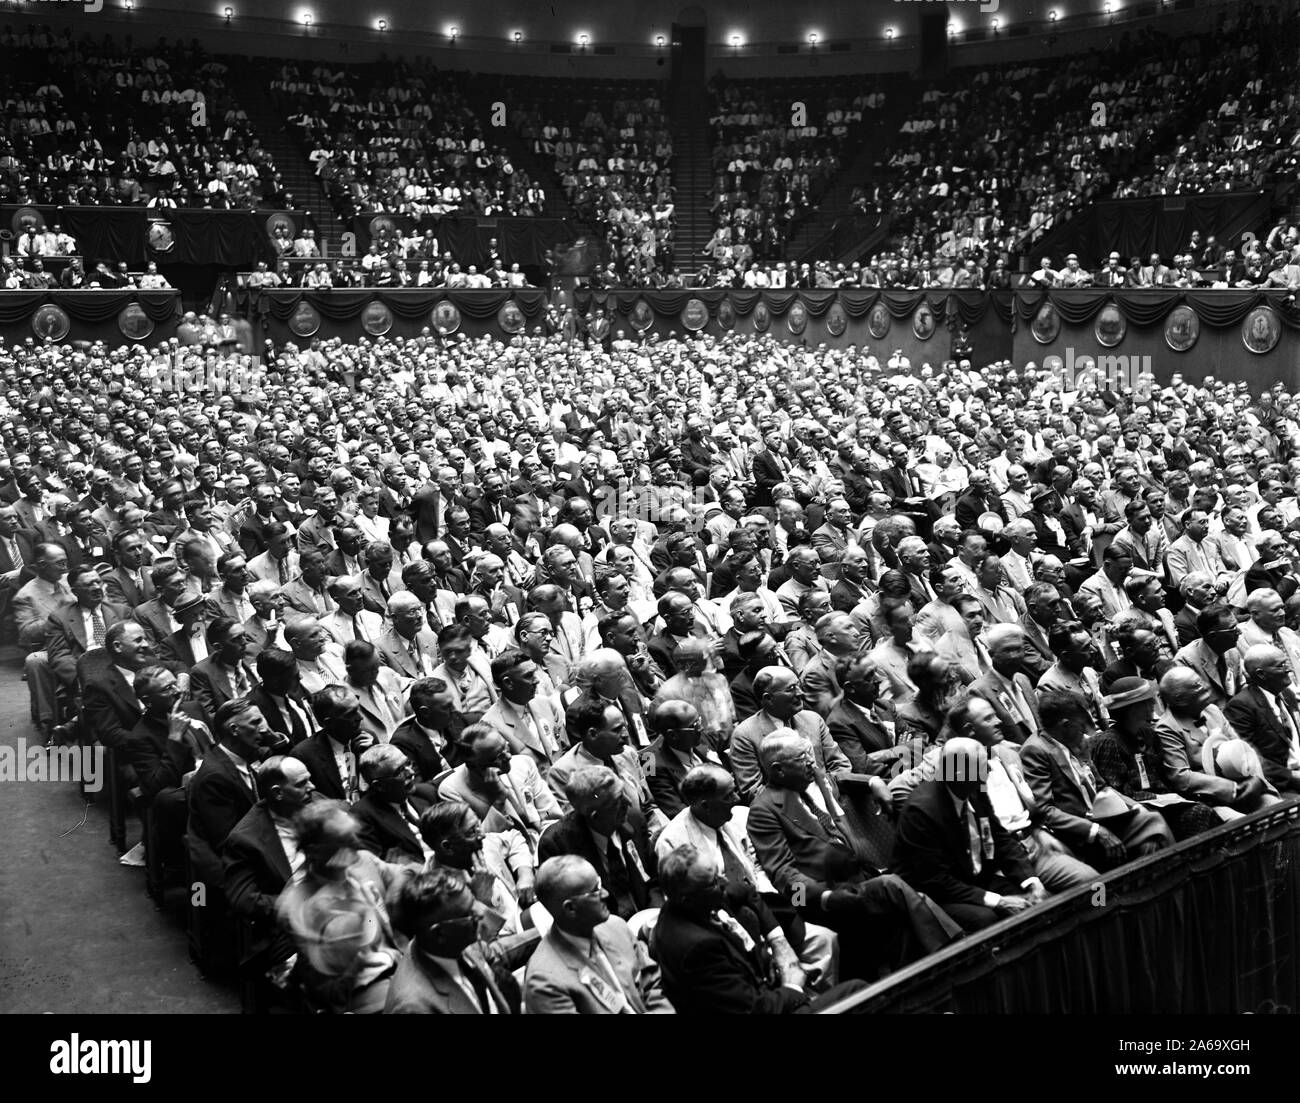 Multitud de gente escuchando a un orador (no en la foto), ca. 1935 Foto de stock